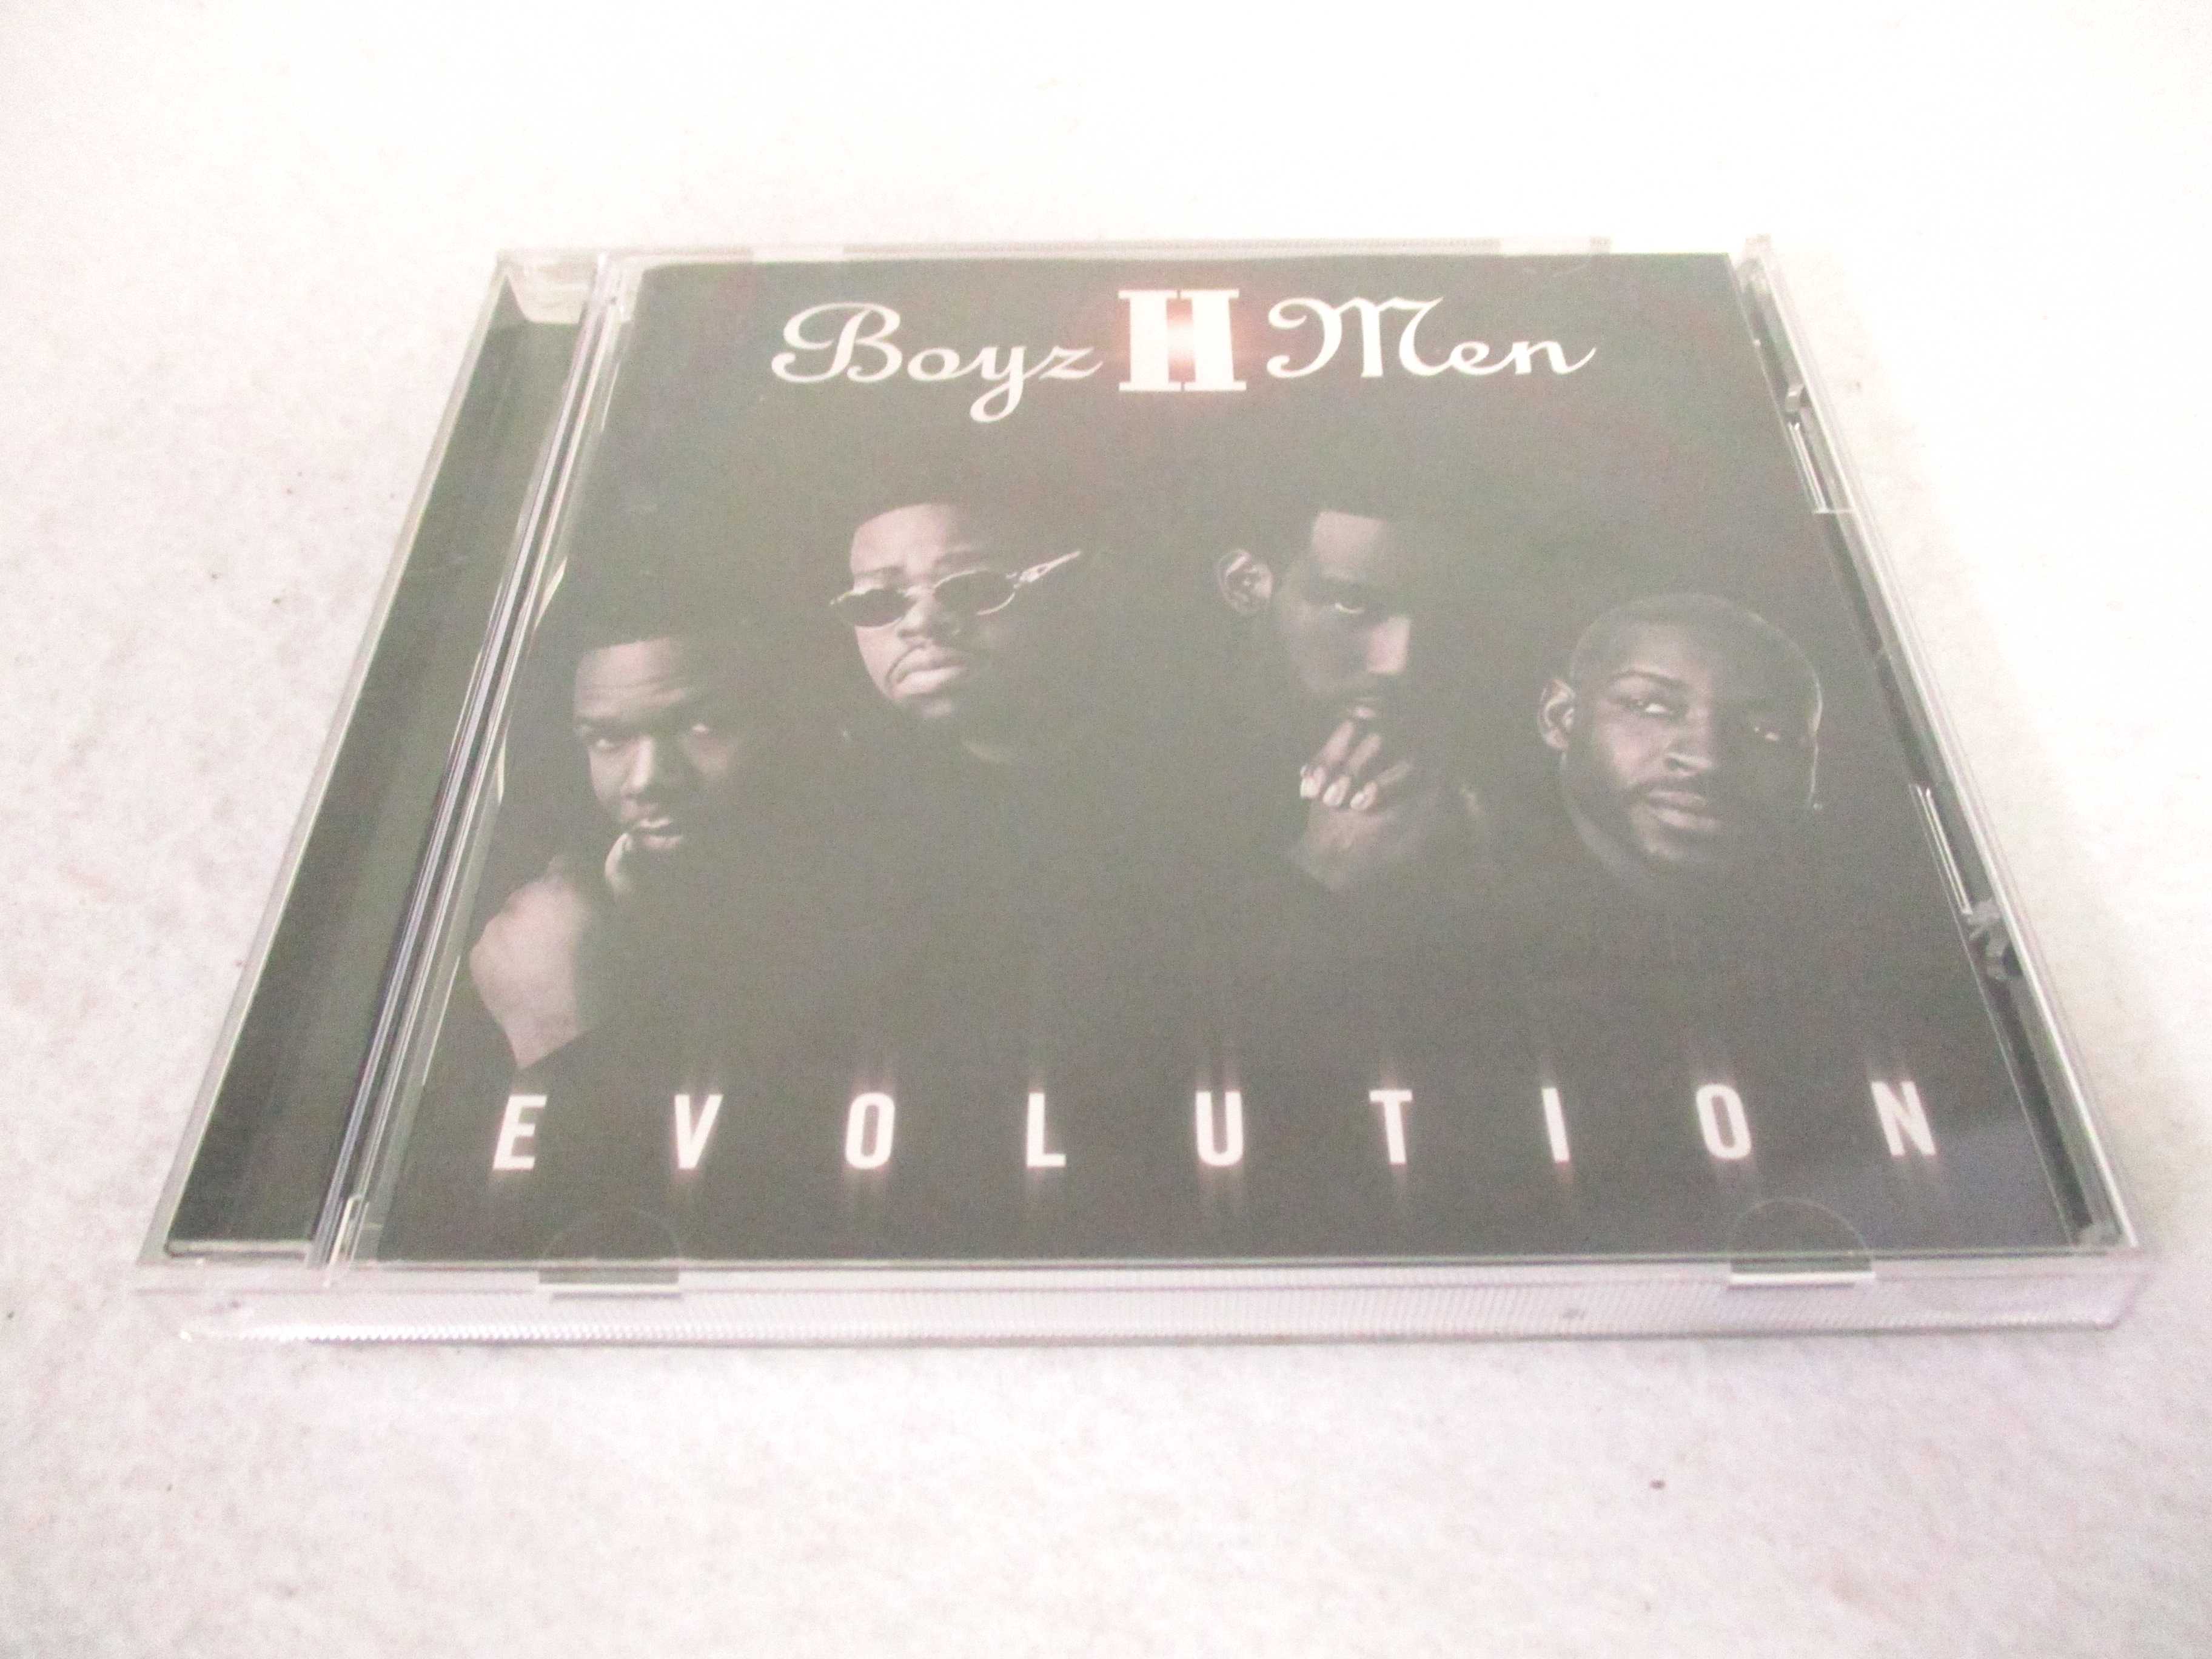 AC02381 yÁz yCDz EVOLUTION/Boyz II Men